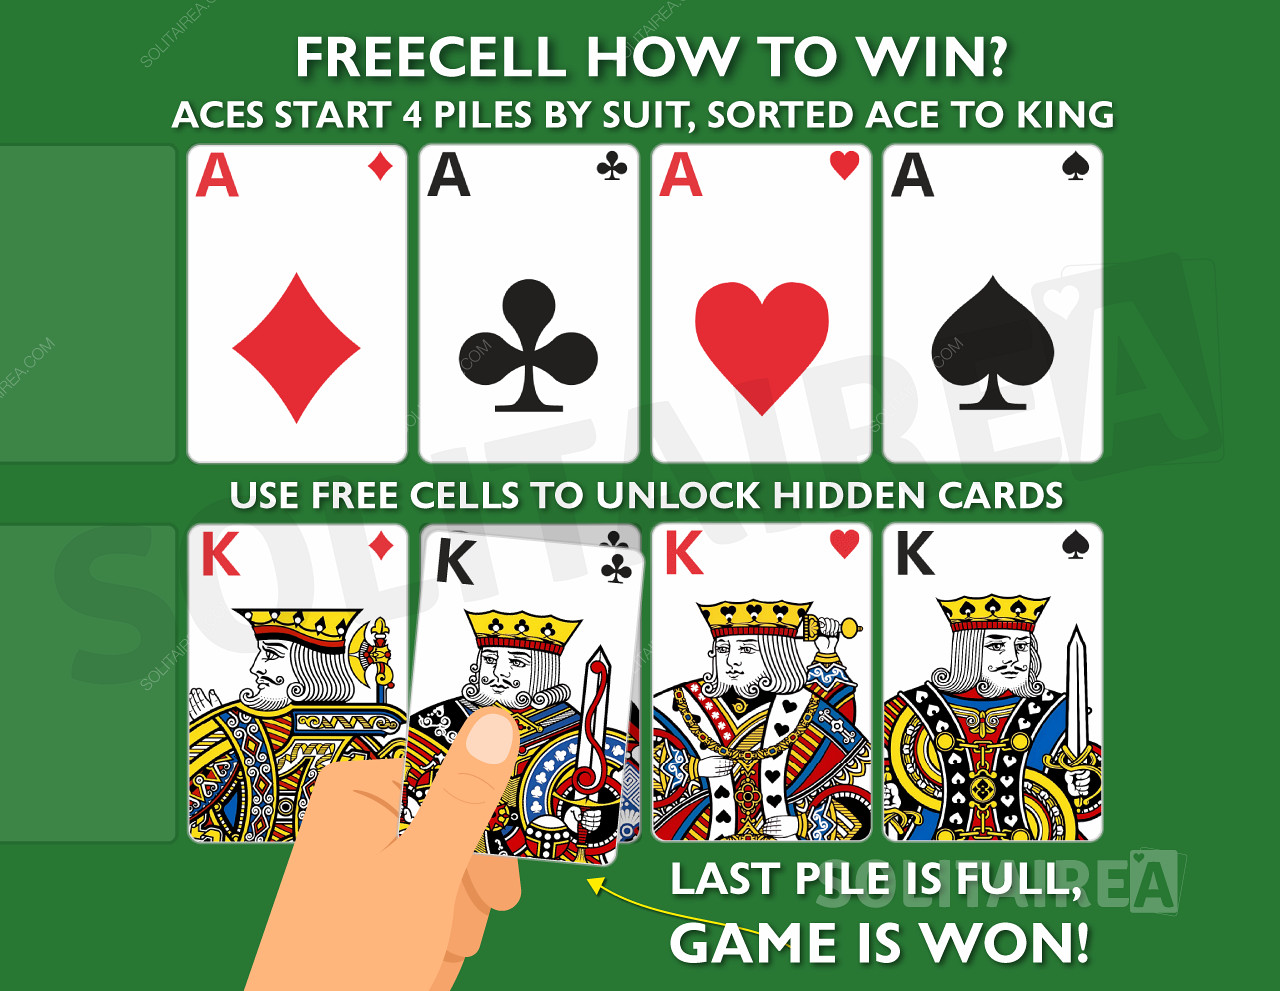 Jak vyhrát hru? Zkompletujte 4 hromádky stejných karet seřazených od esa po krále.